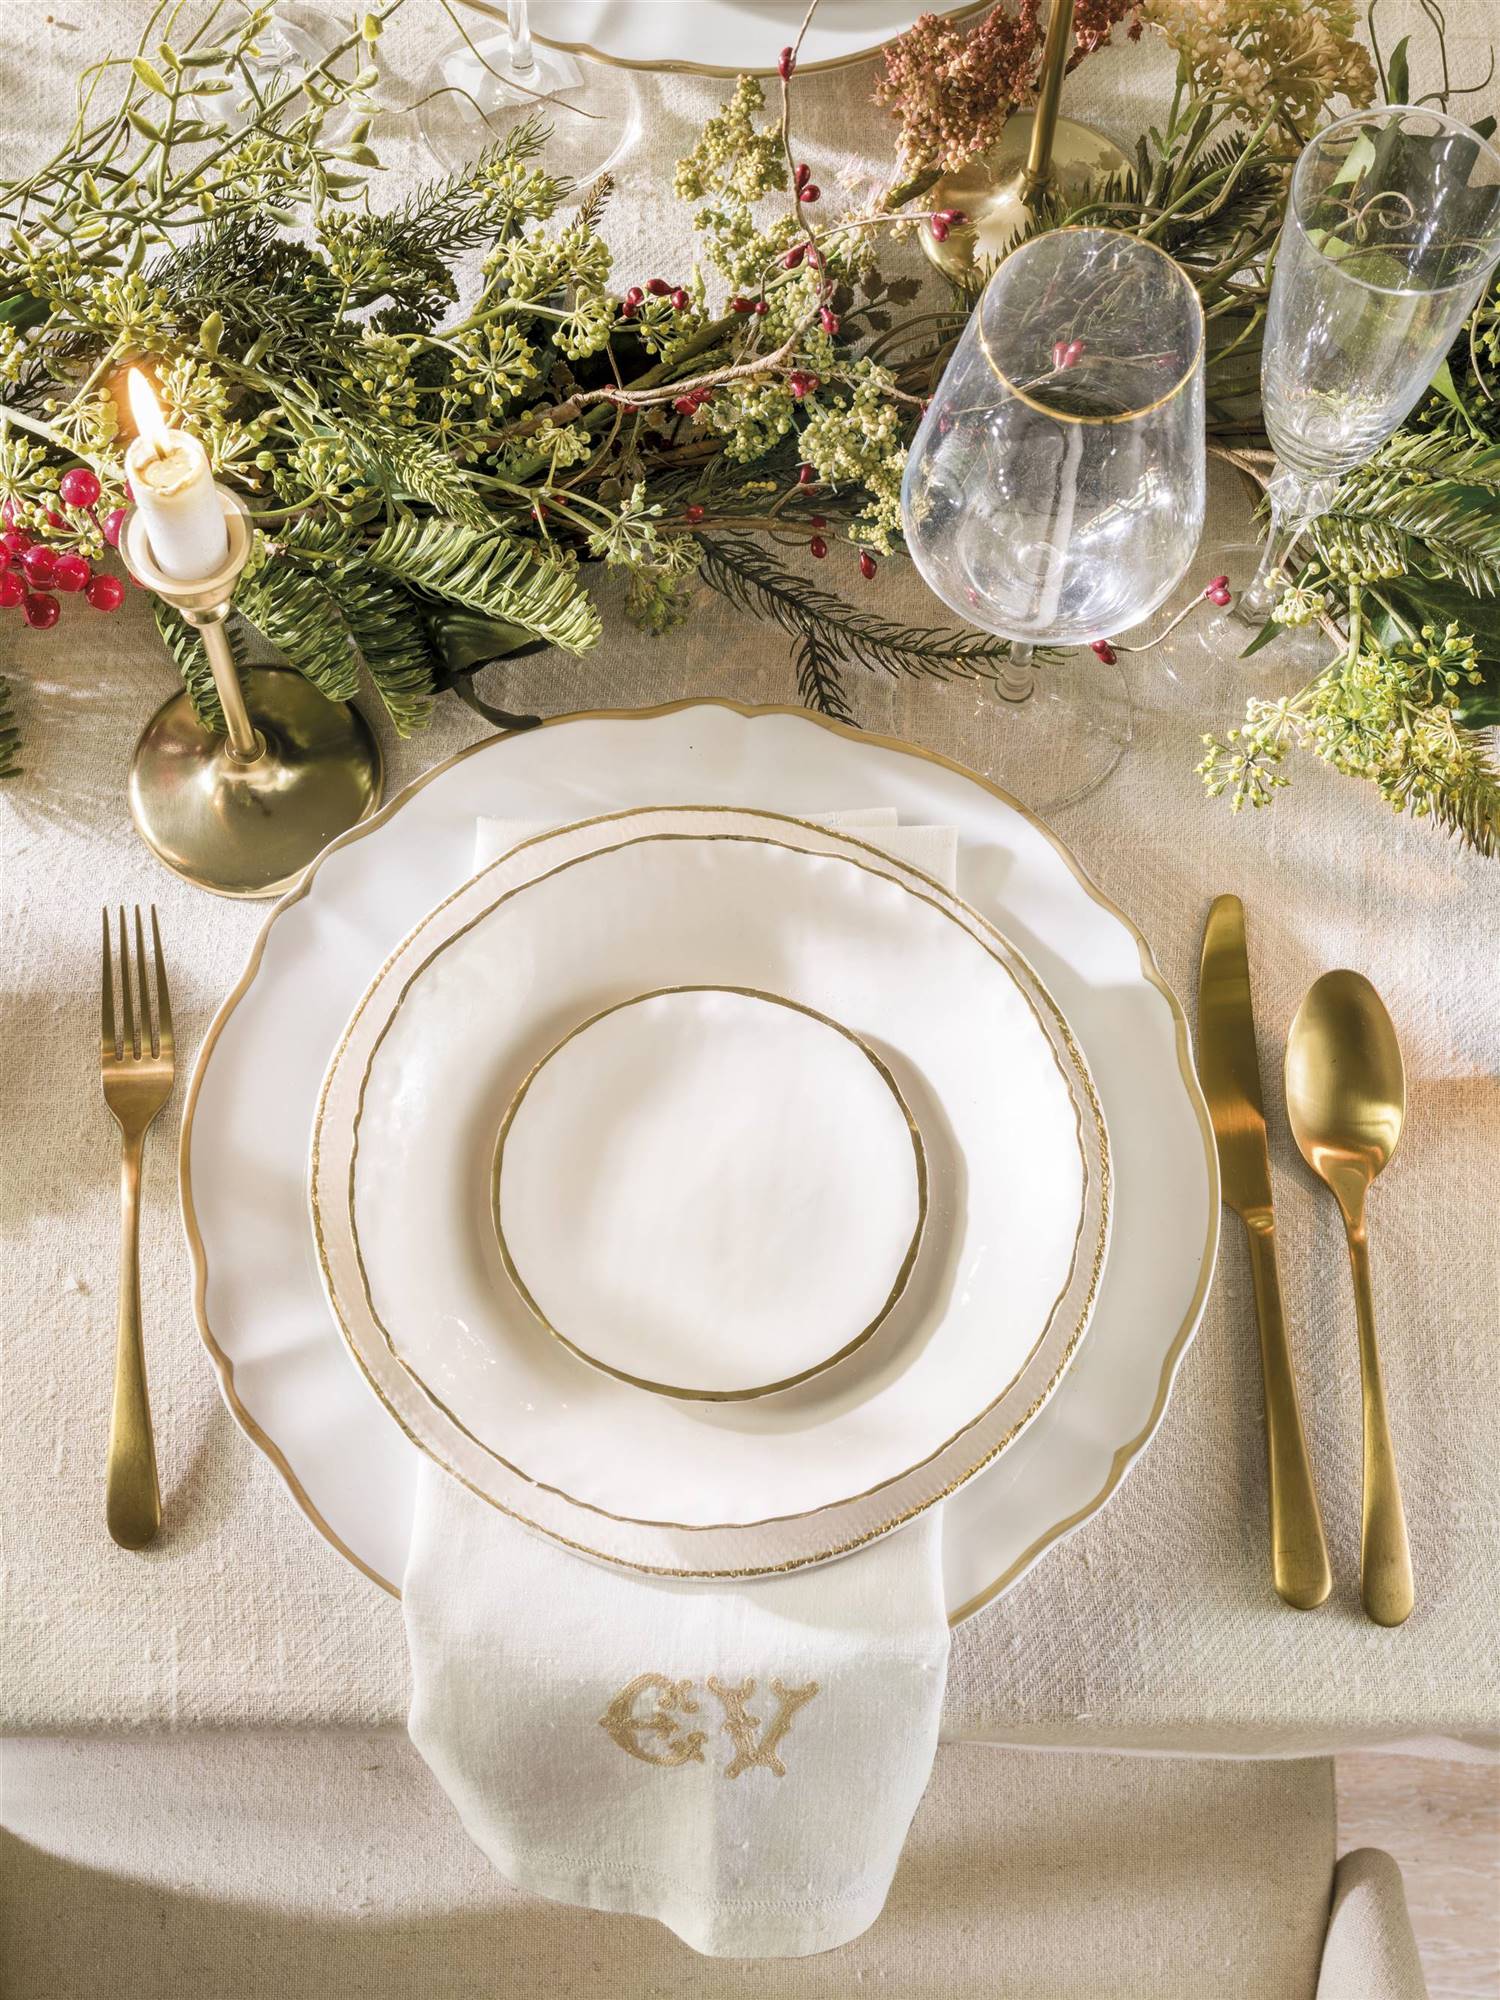 vajilla dorada en mesa decorada por navidad 00529232